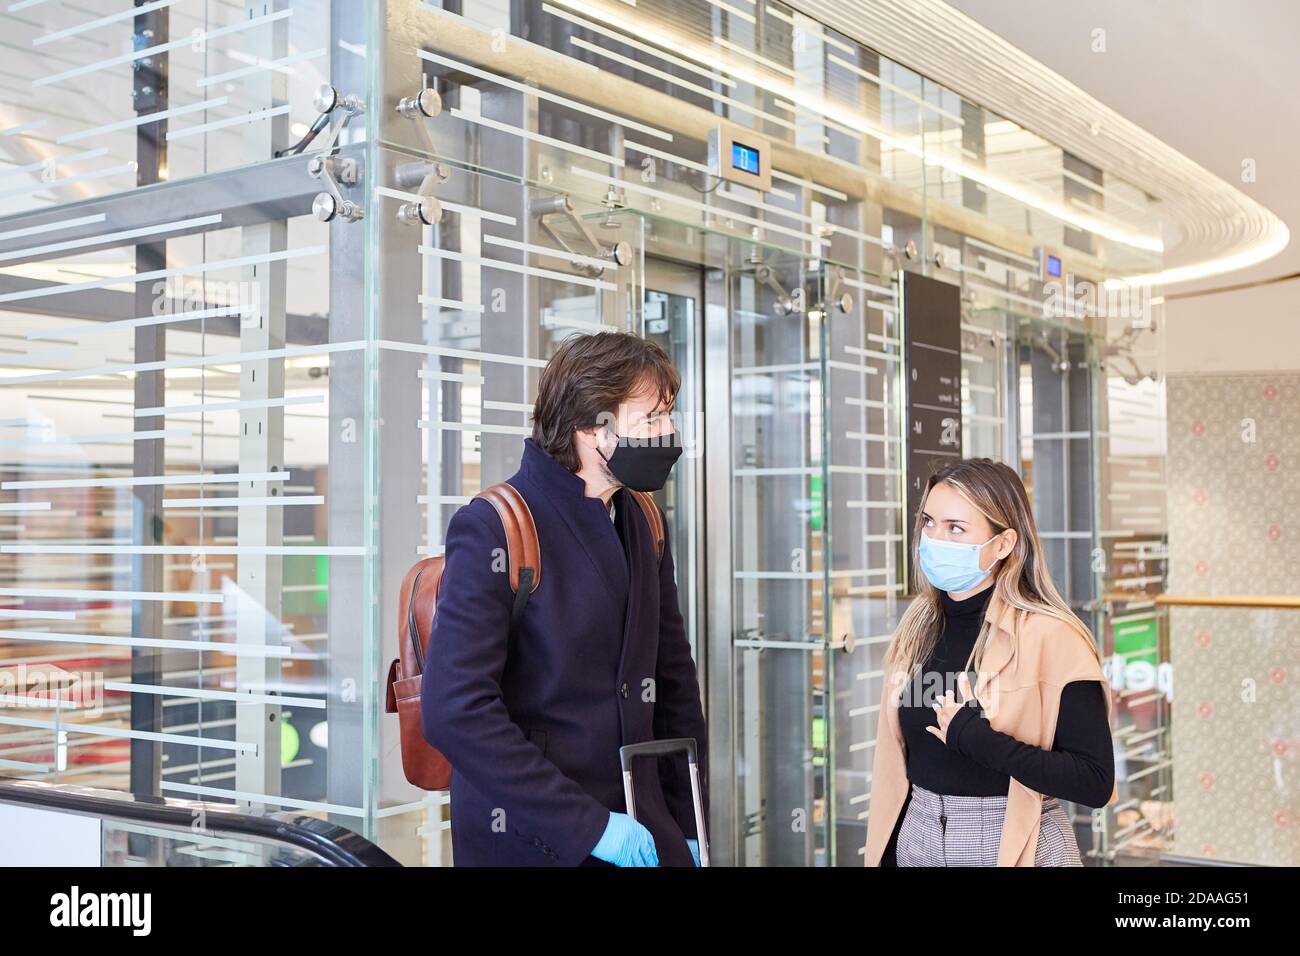 Les gens d'affaires avec masque facial lors d'un voyage d'affaires dans le aéroport pendant la pandémie Covid-19 Banque D'Images